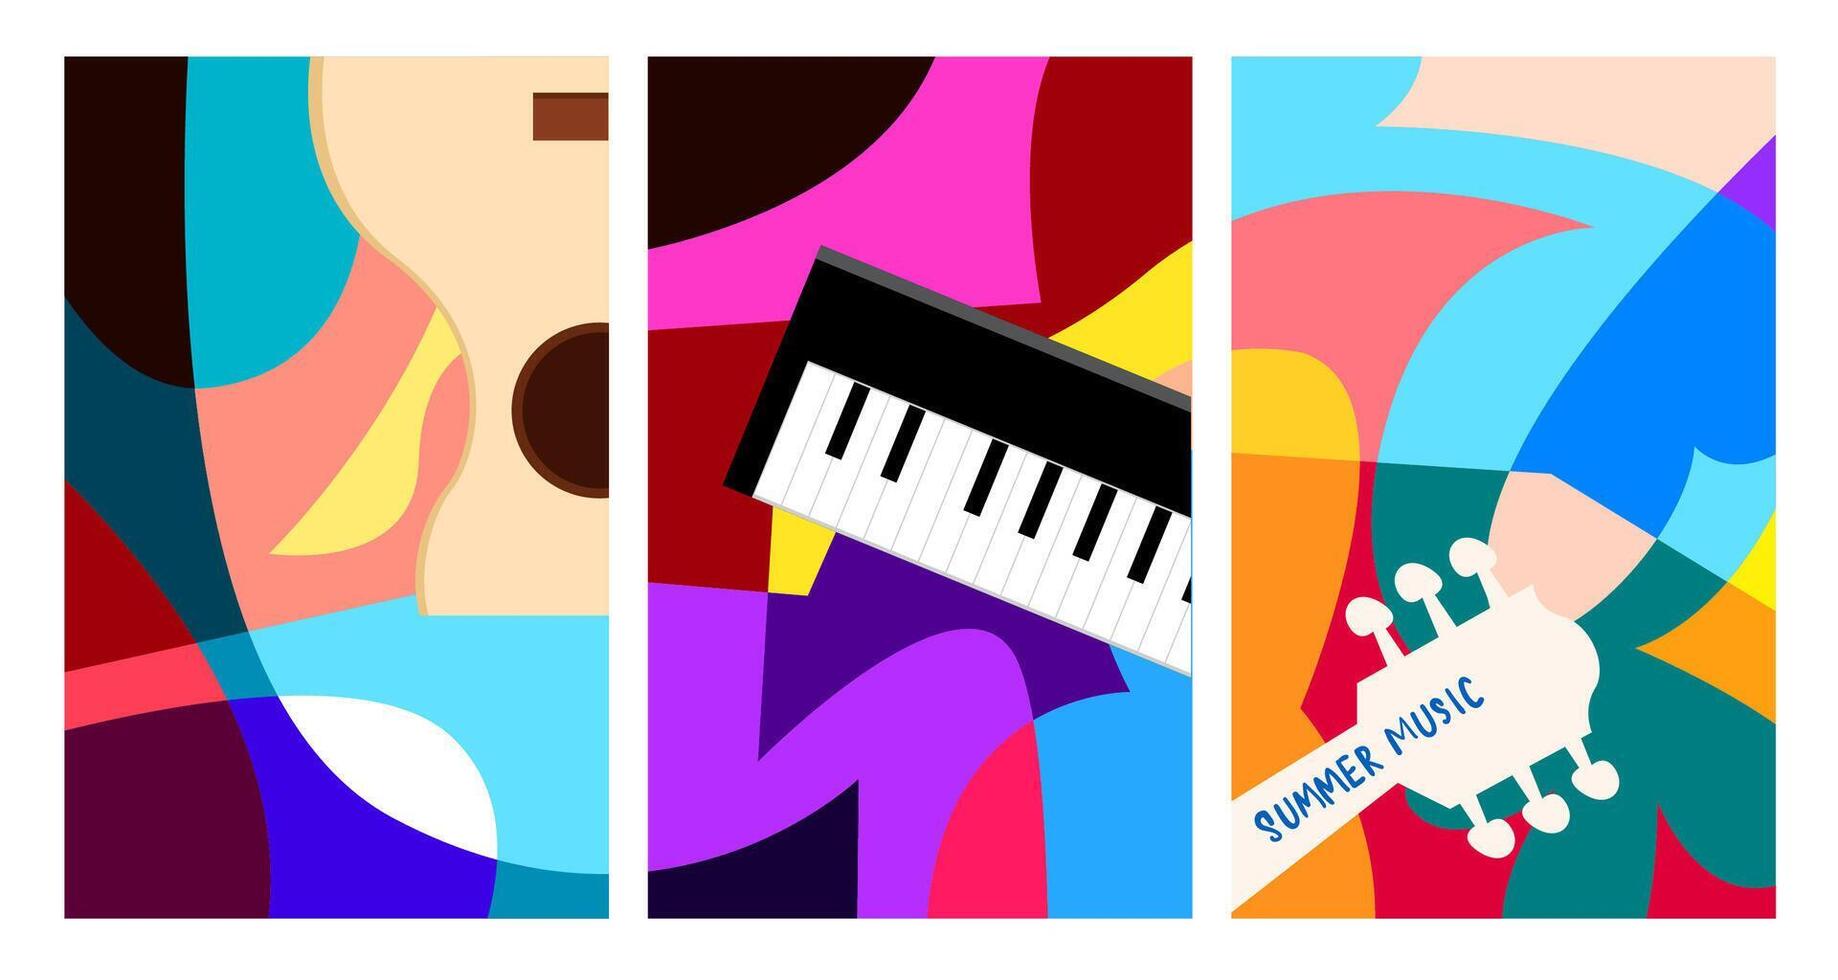 illustrazione vettoriale banner colorato festival musicale estivo